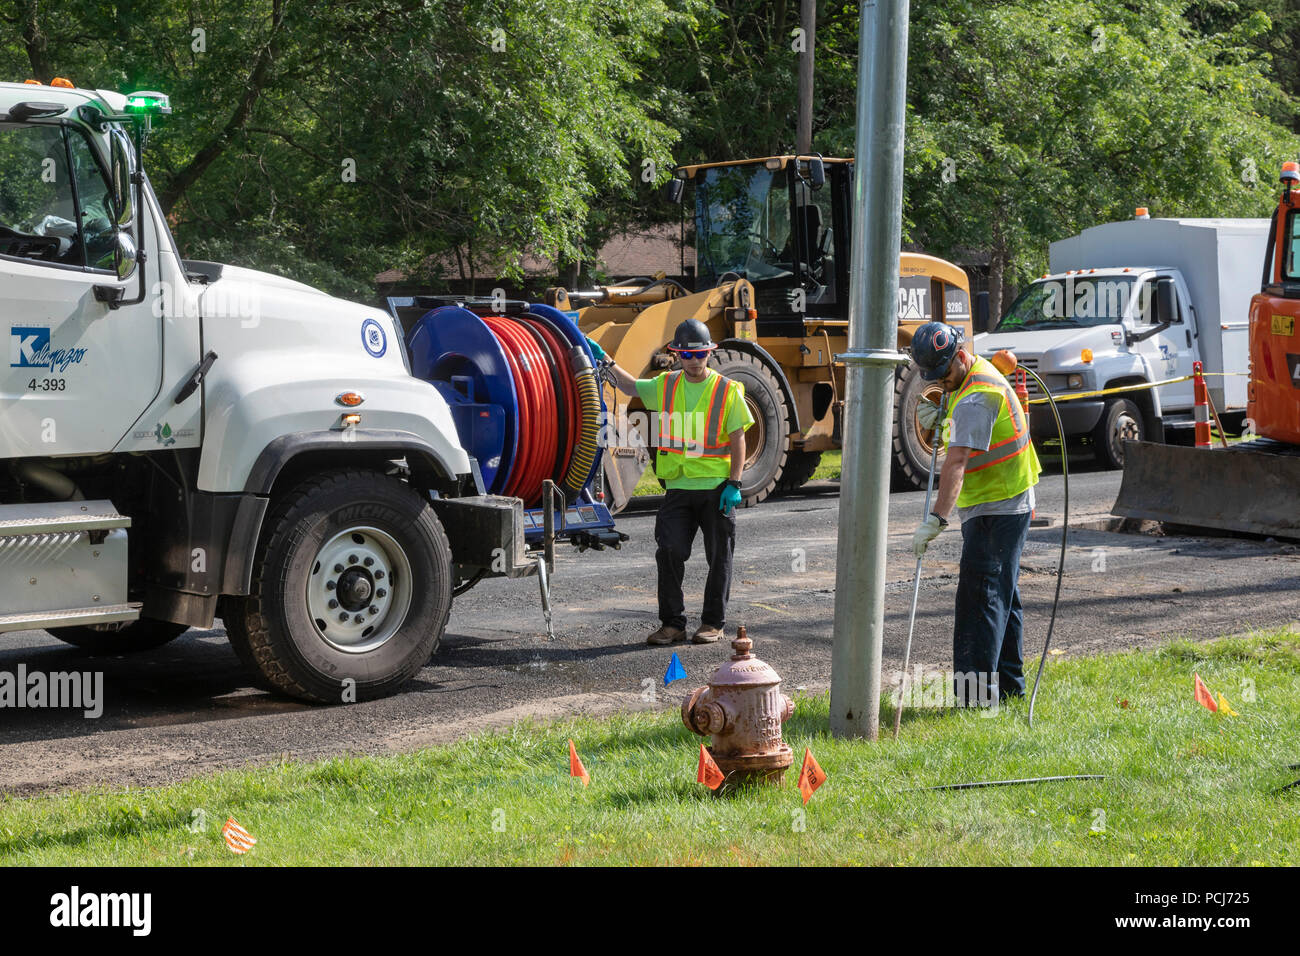 Pergamena, Michigan - a seguito della scoperta di alte concentrazioni di PFAS in pergamena di acqua potabile, un equipaggio di costruzione si collega la città di w Foto Stock